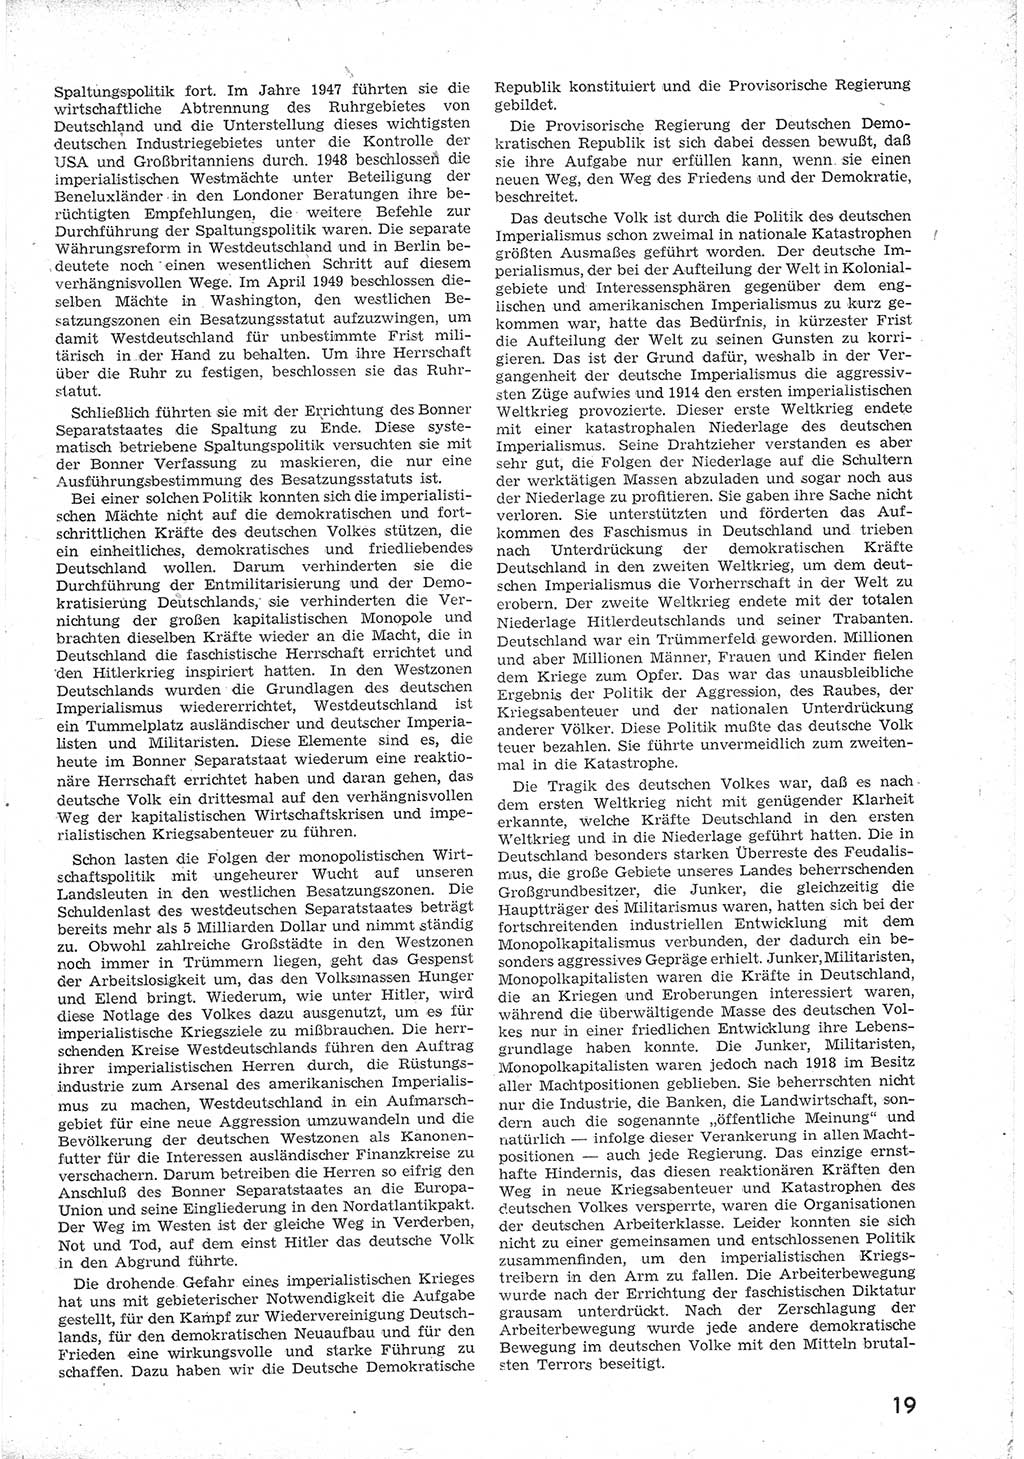 Provisorische Volkskammer (VK) der Deutschen Demokratischen Republik (DDR) 1949-1950, Dokument 31 (Prov. VK DDR 1949-1950, Dok. 31)